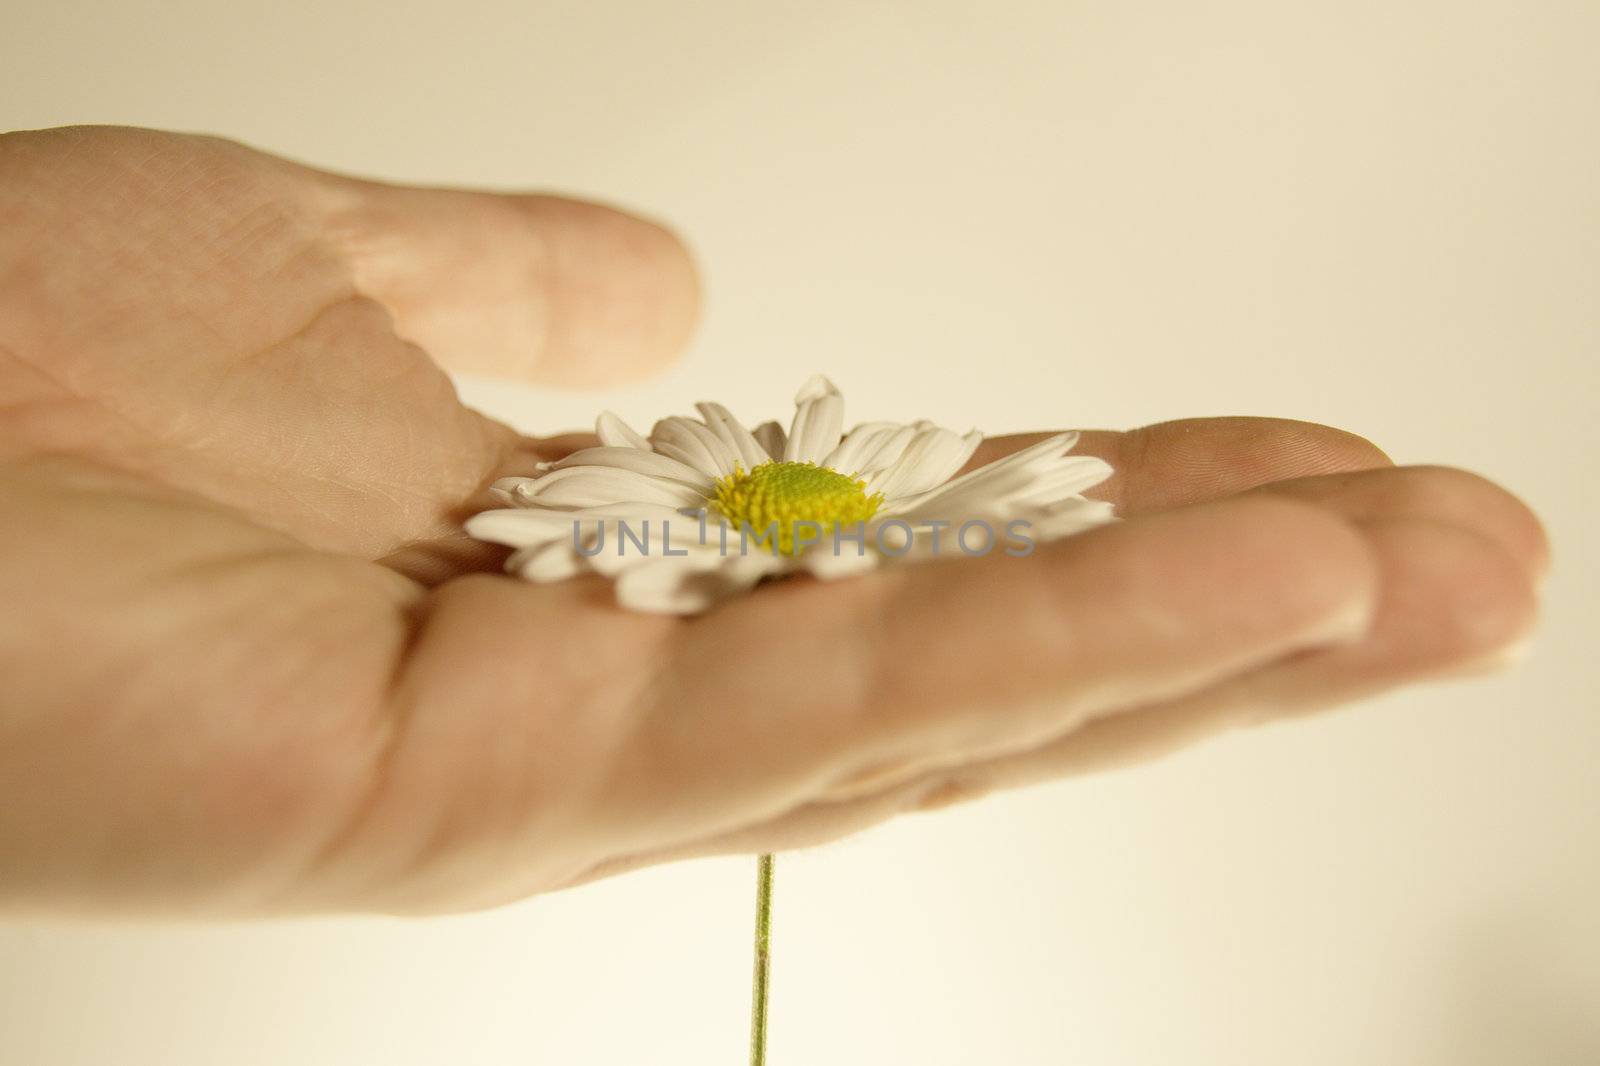 daisy in hand by alkorphoto